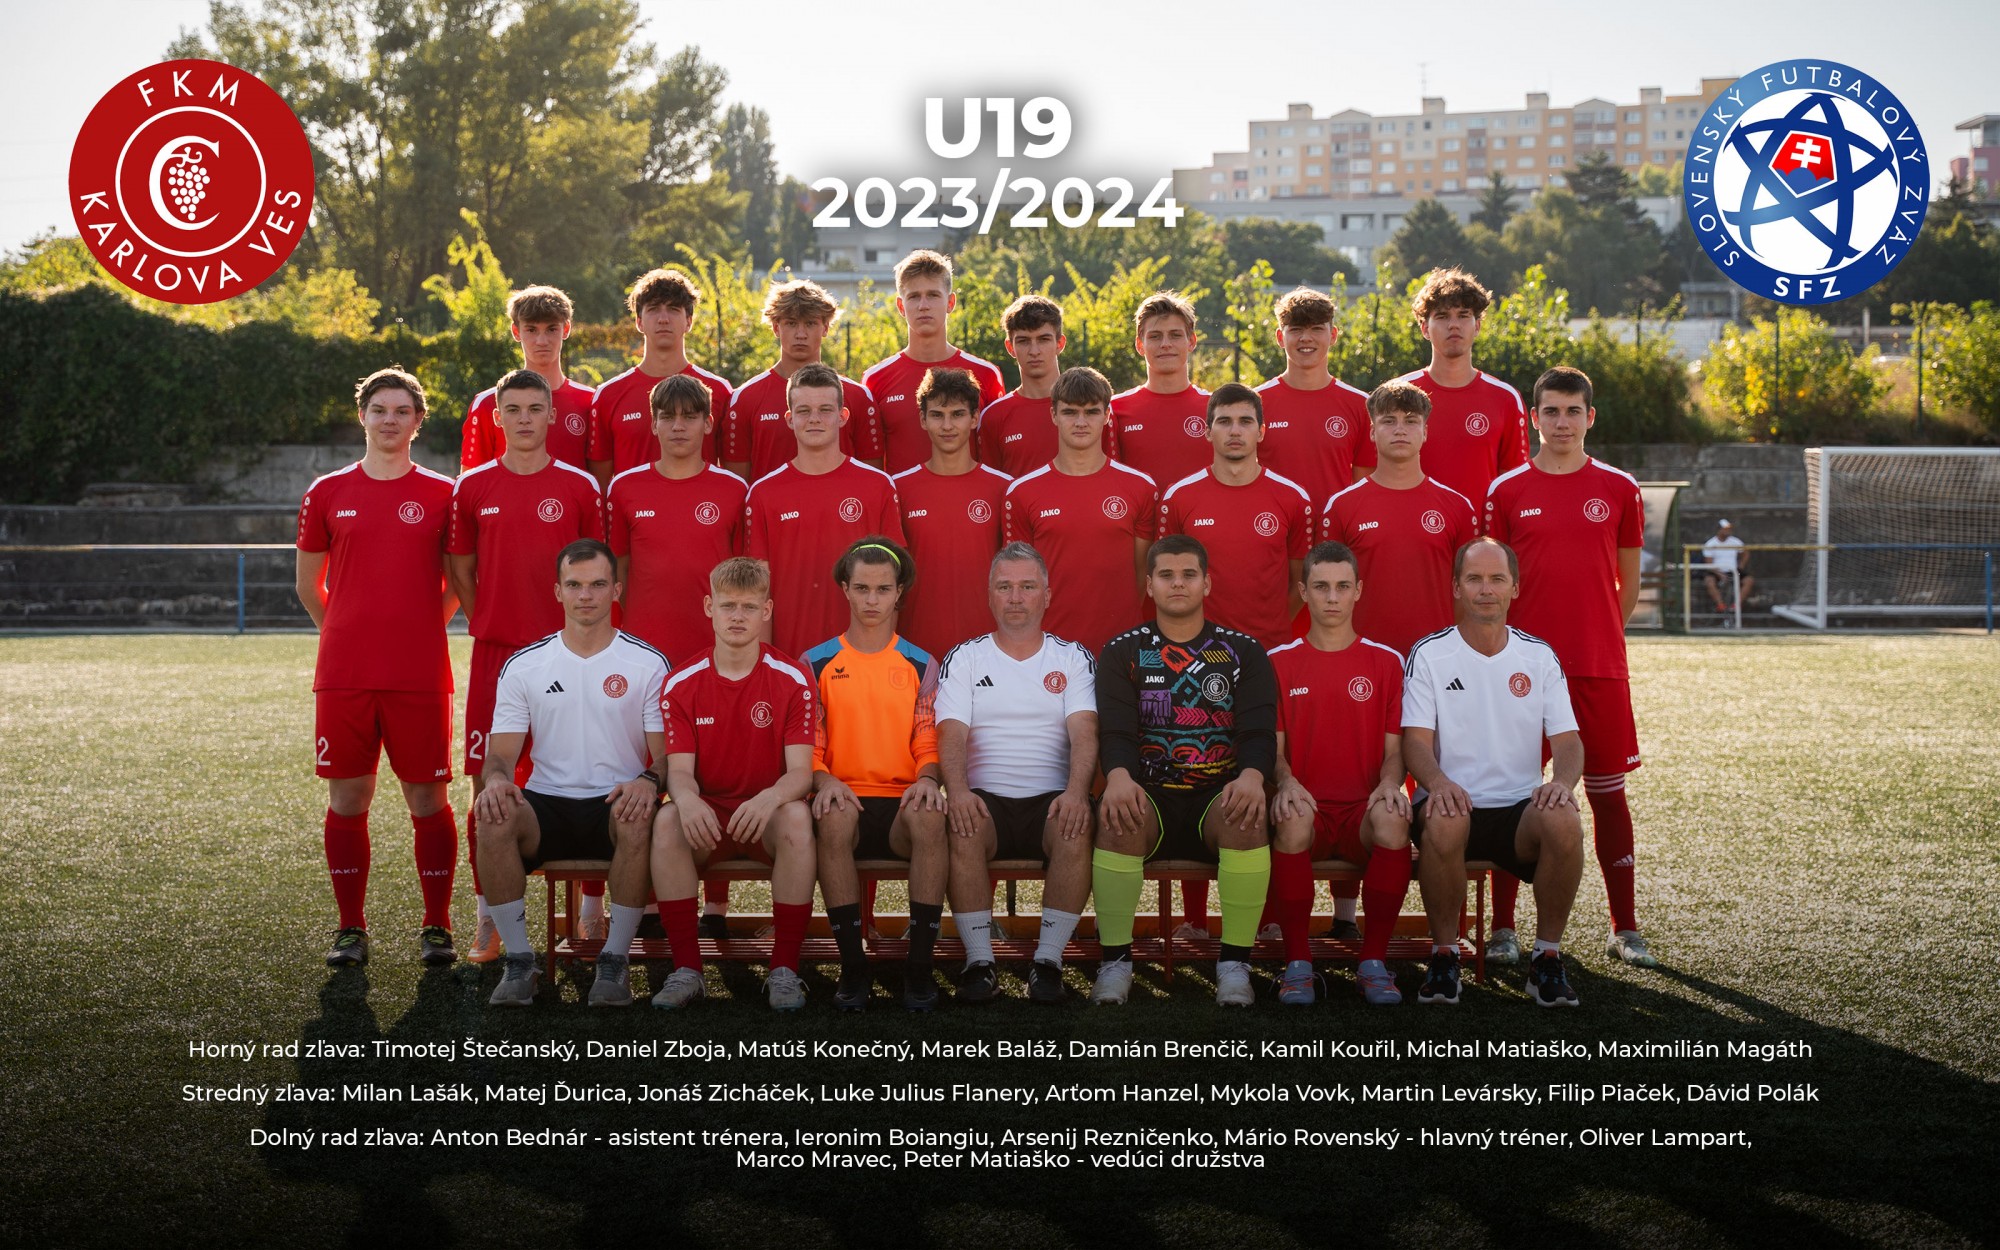 Starší dorast U19 (2005, 2006) súťažný ročník 2023/2024